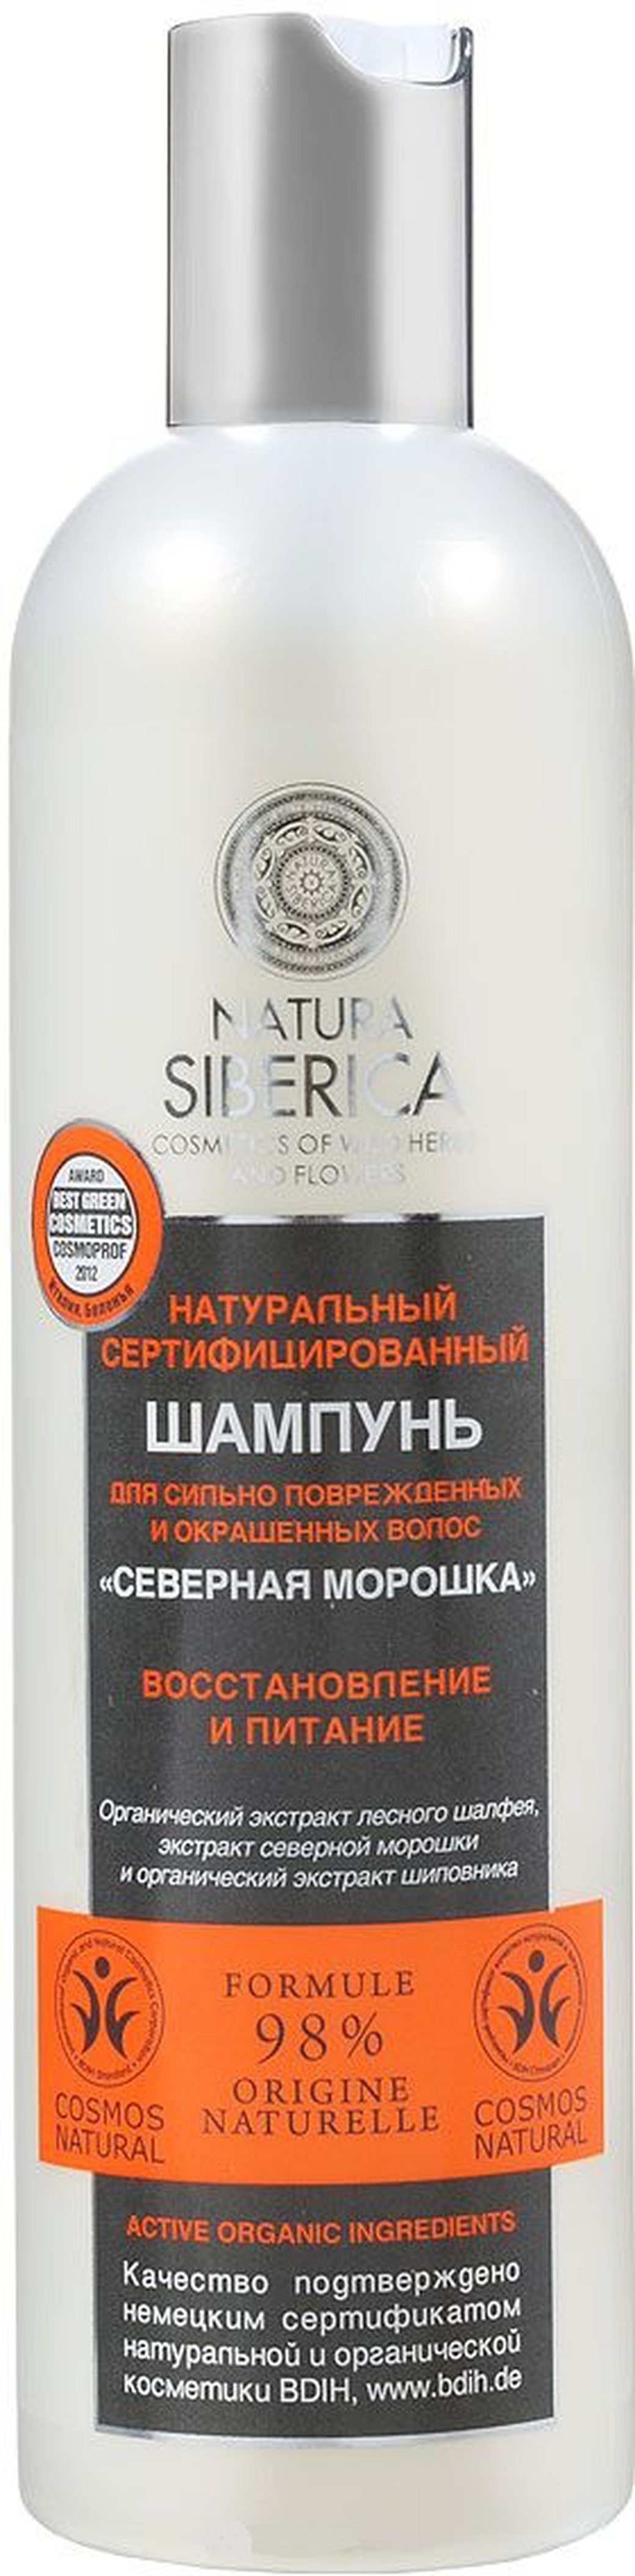 Natura Siberica Шампунь для волос Северная морошка 400мл фото